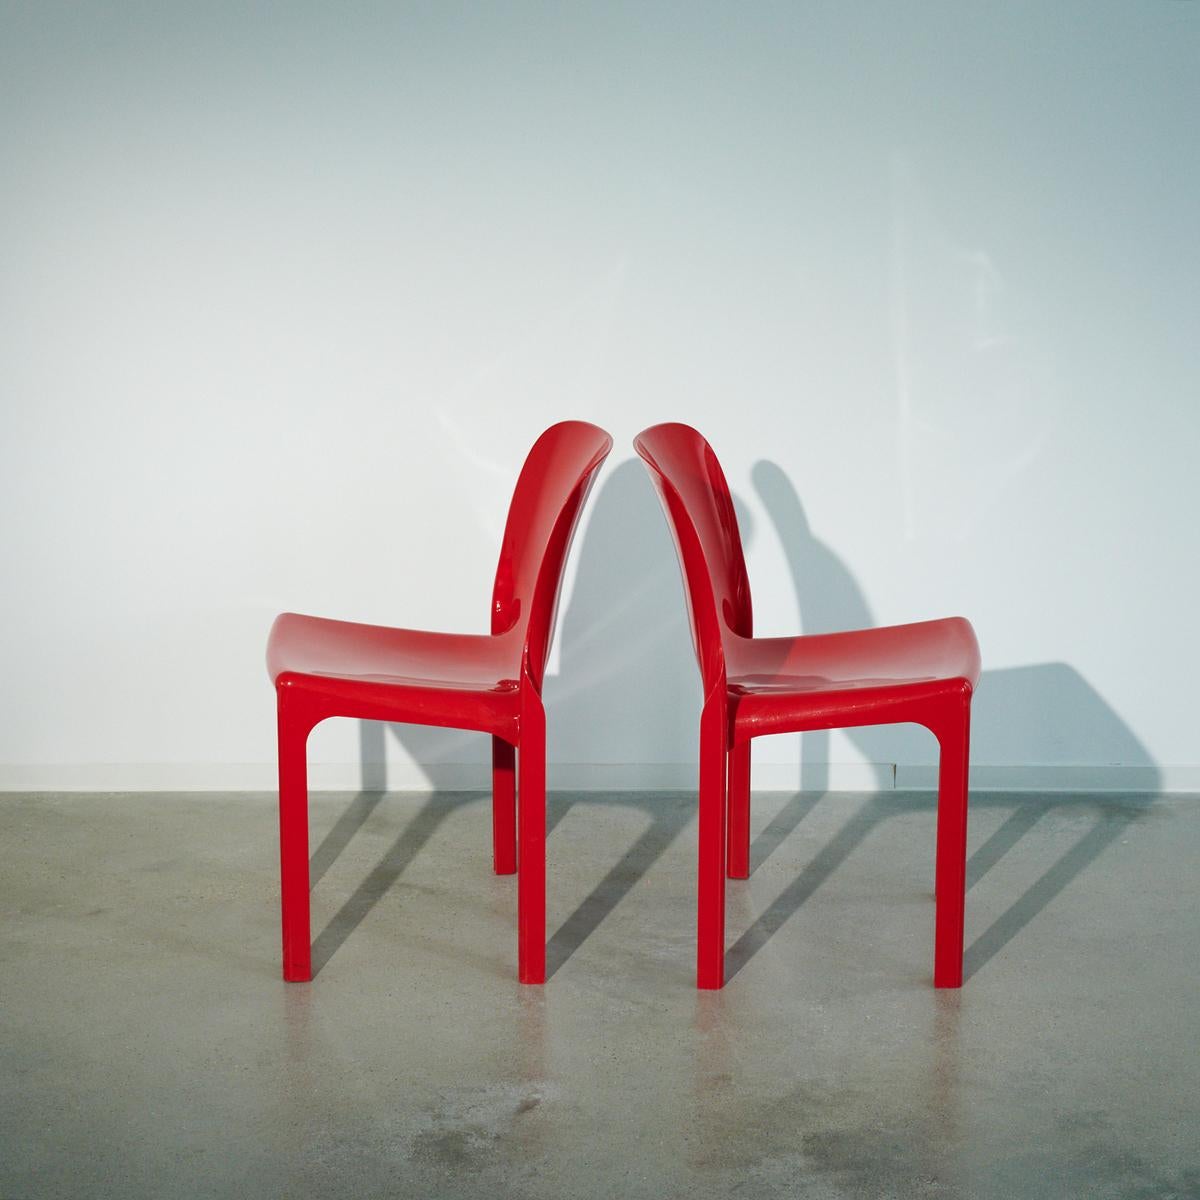 Paire de chaises 'Selene' en plastique de Vico Magistretti, 1968

La chaise selene a été conçue par Vico Magistretti pour Artemide en 1968.

Informations complémentaires : 
Matériau : Plastique
Designer : Vico Magistretti
Taille : 52 L X 48 P